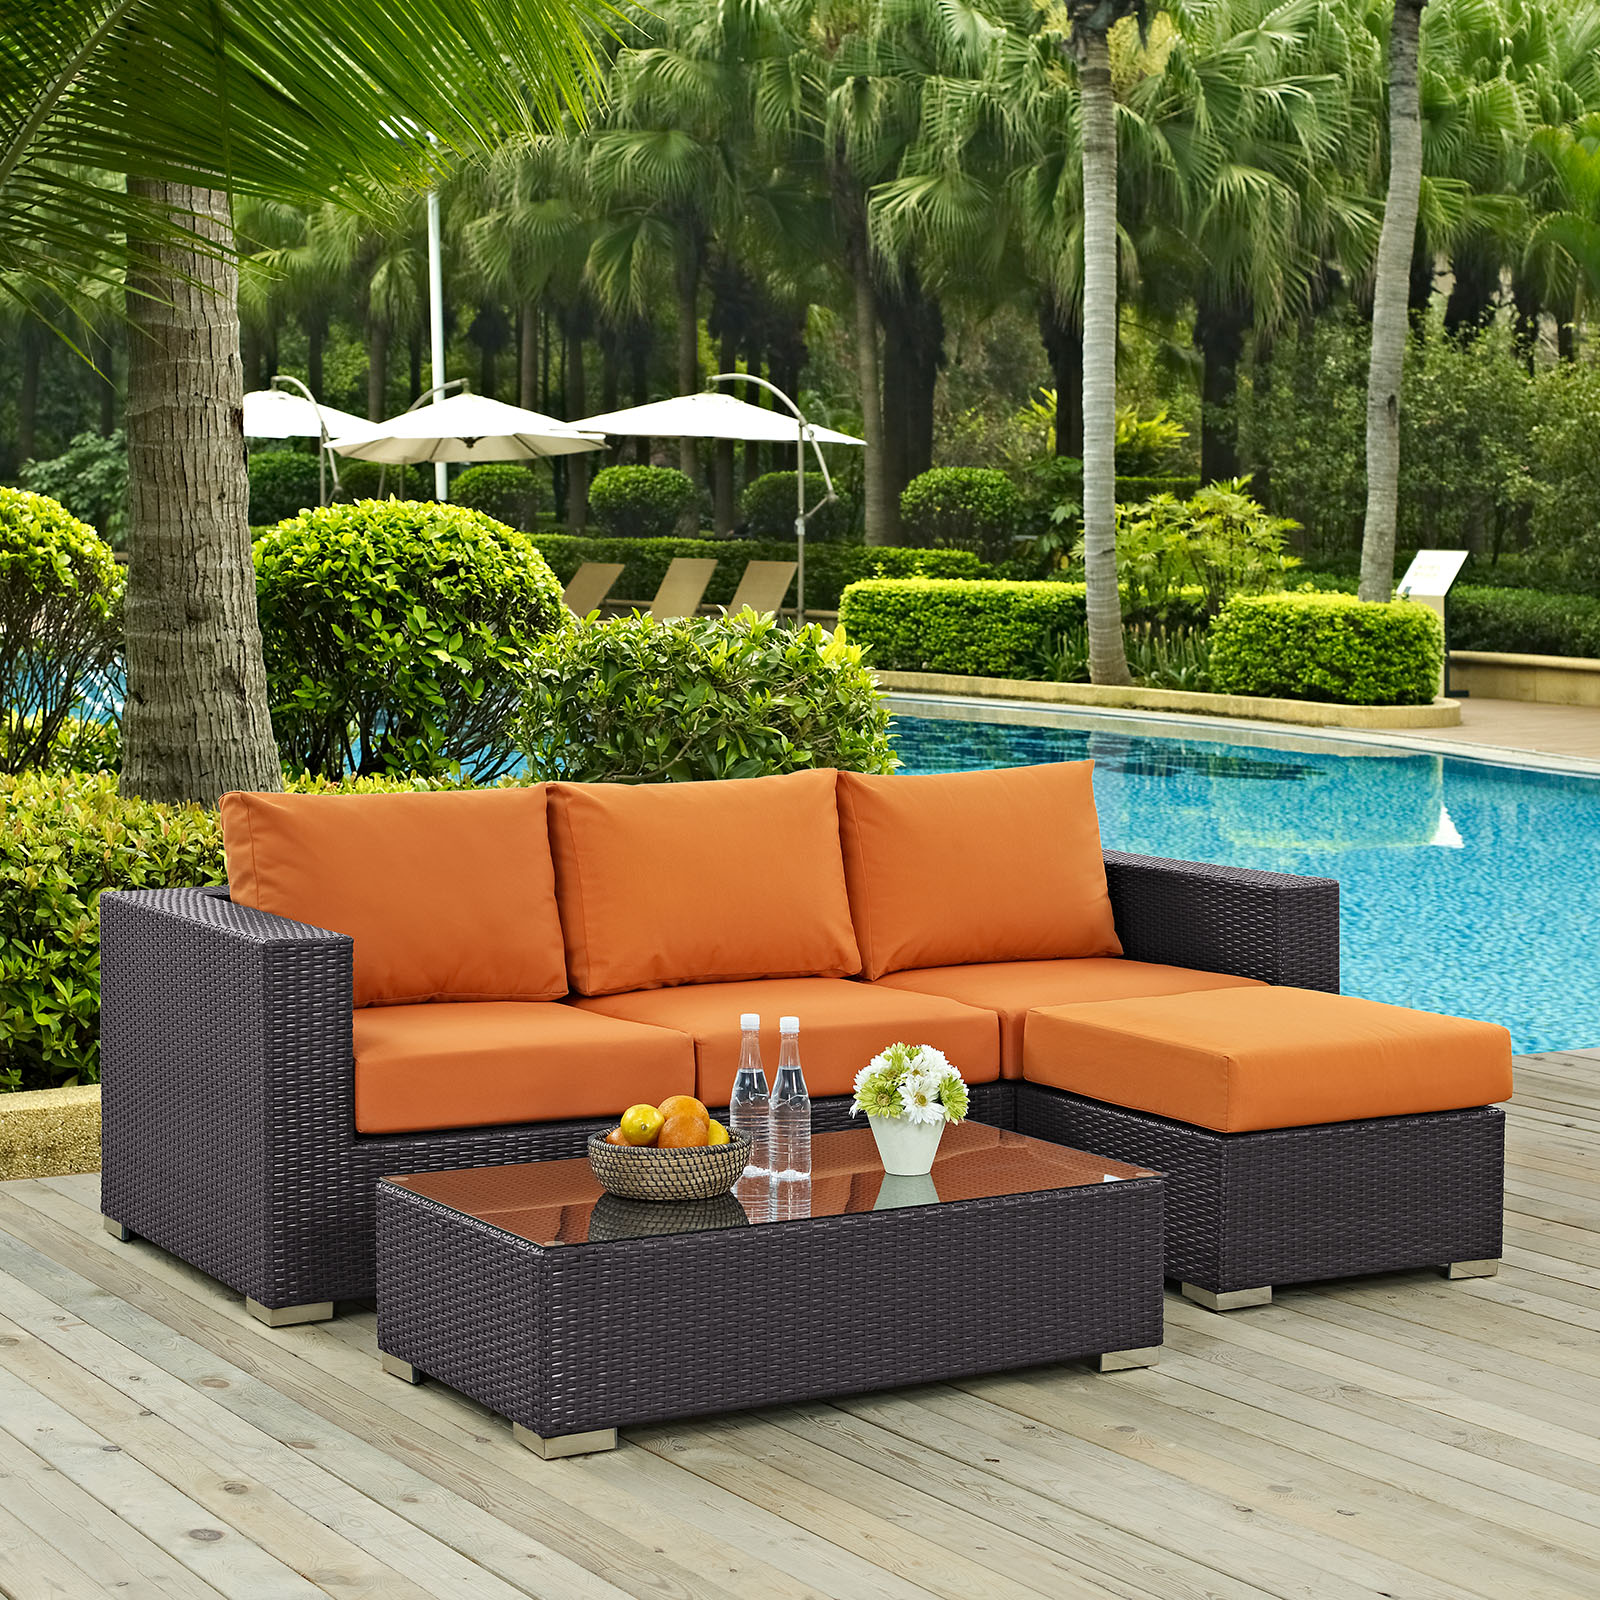 Modway Convene 3 Piece Outdoor Patio Sofa Set in Espresso Orange - image 1 of 7